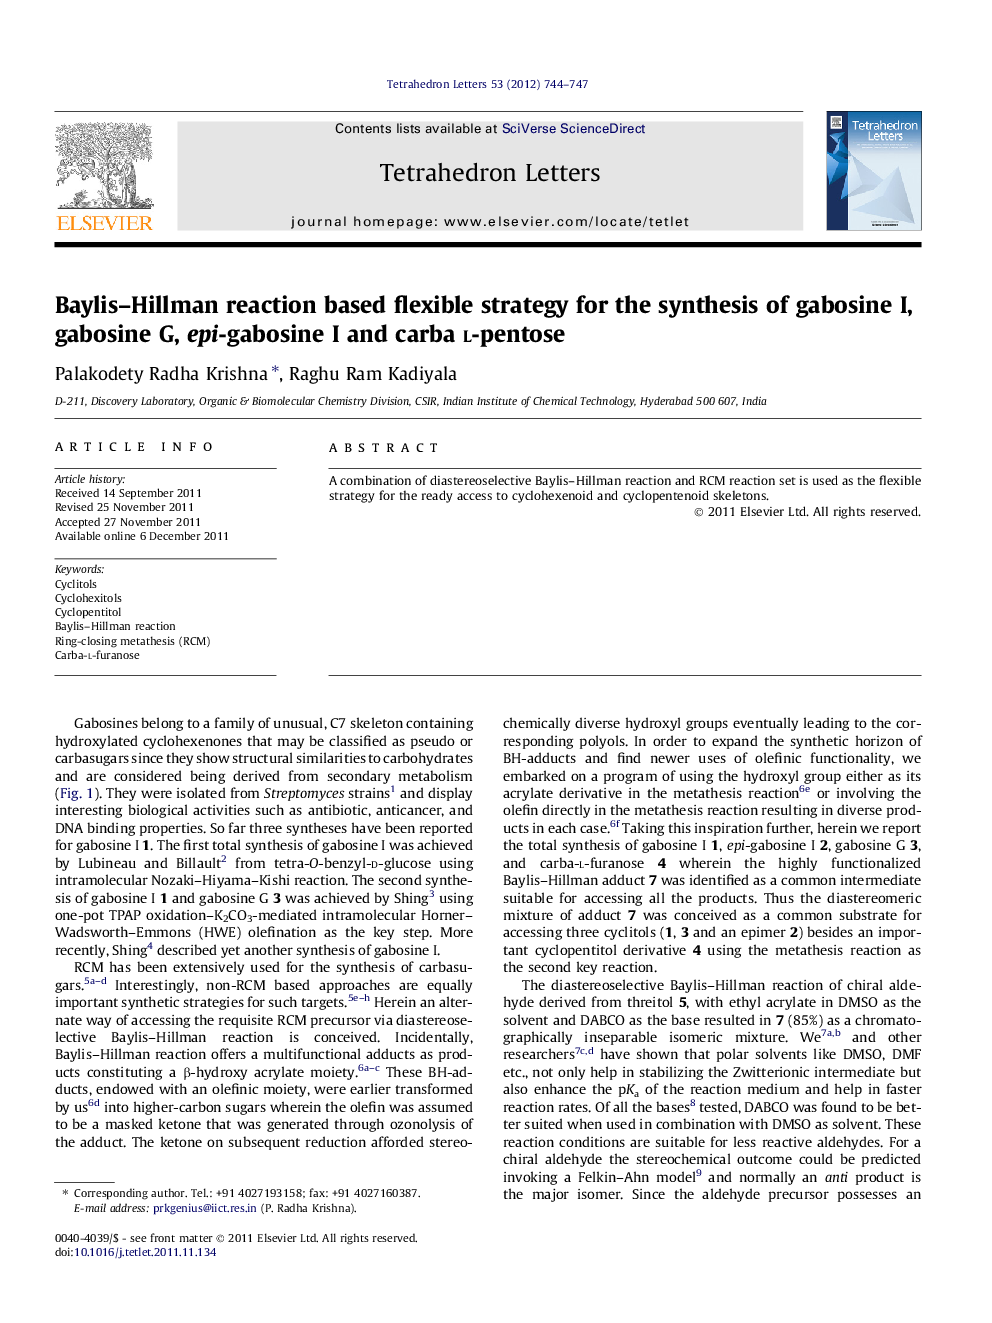 Baylis-Hillman reaction based flexible strategy for the synthesis of gabosine I, gabosine G, epi-gabosine I and carba l-pentose